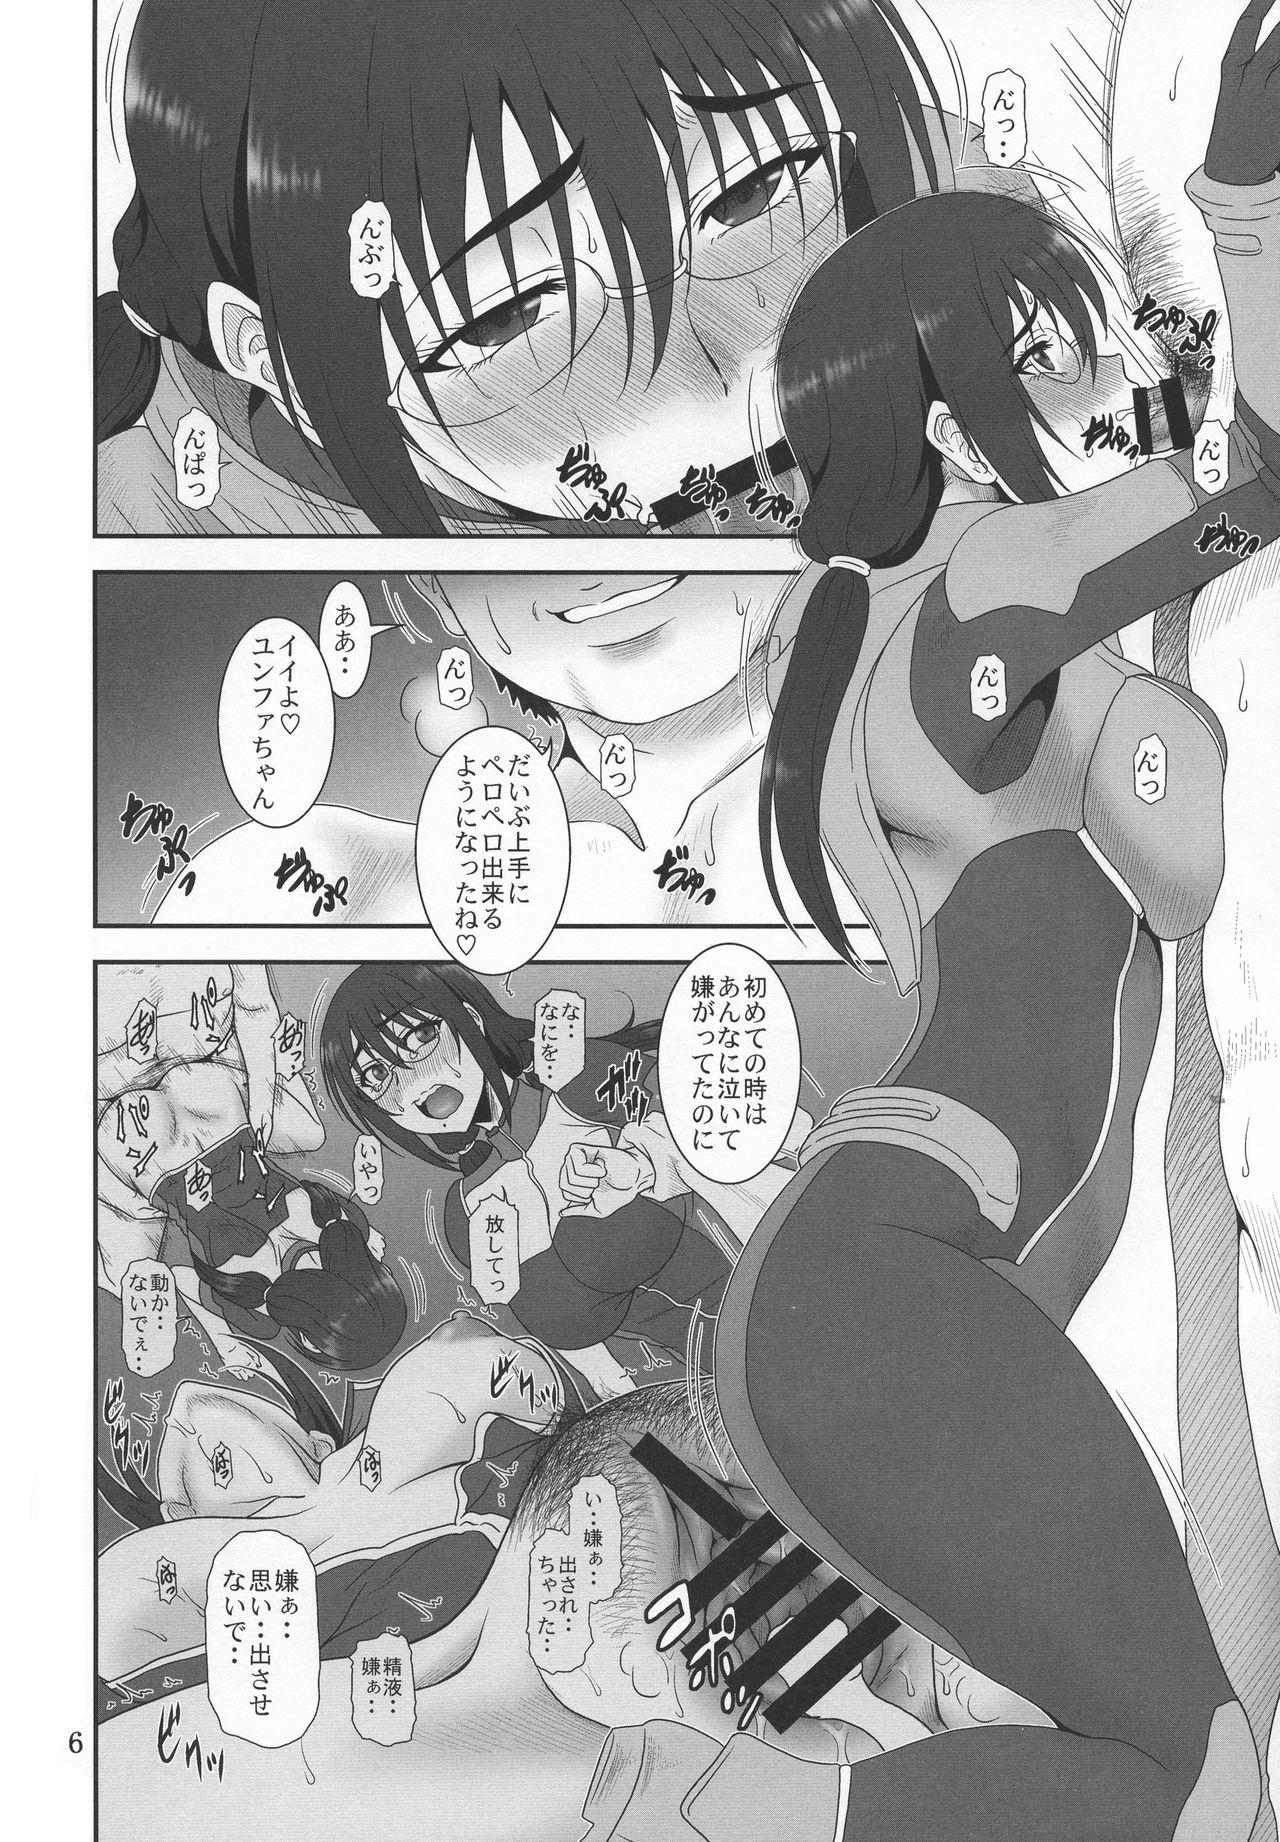 Sloppy Blow Job Kyuukyou no Wakusei - Planet of plight - Kanata no astra Stripping - Page 5